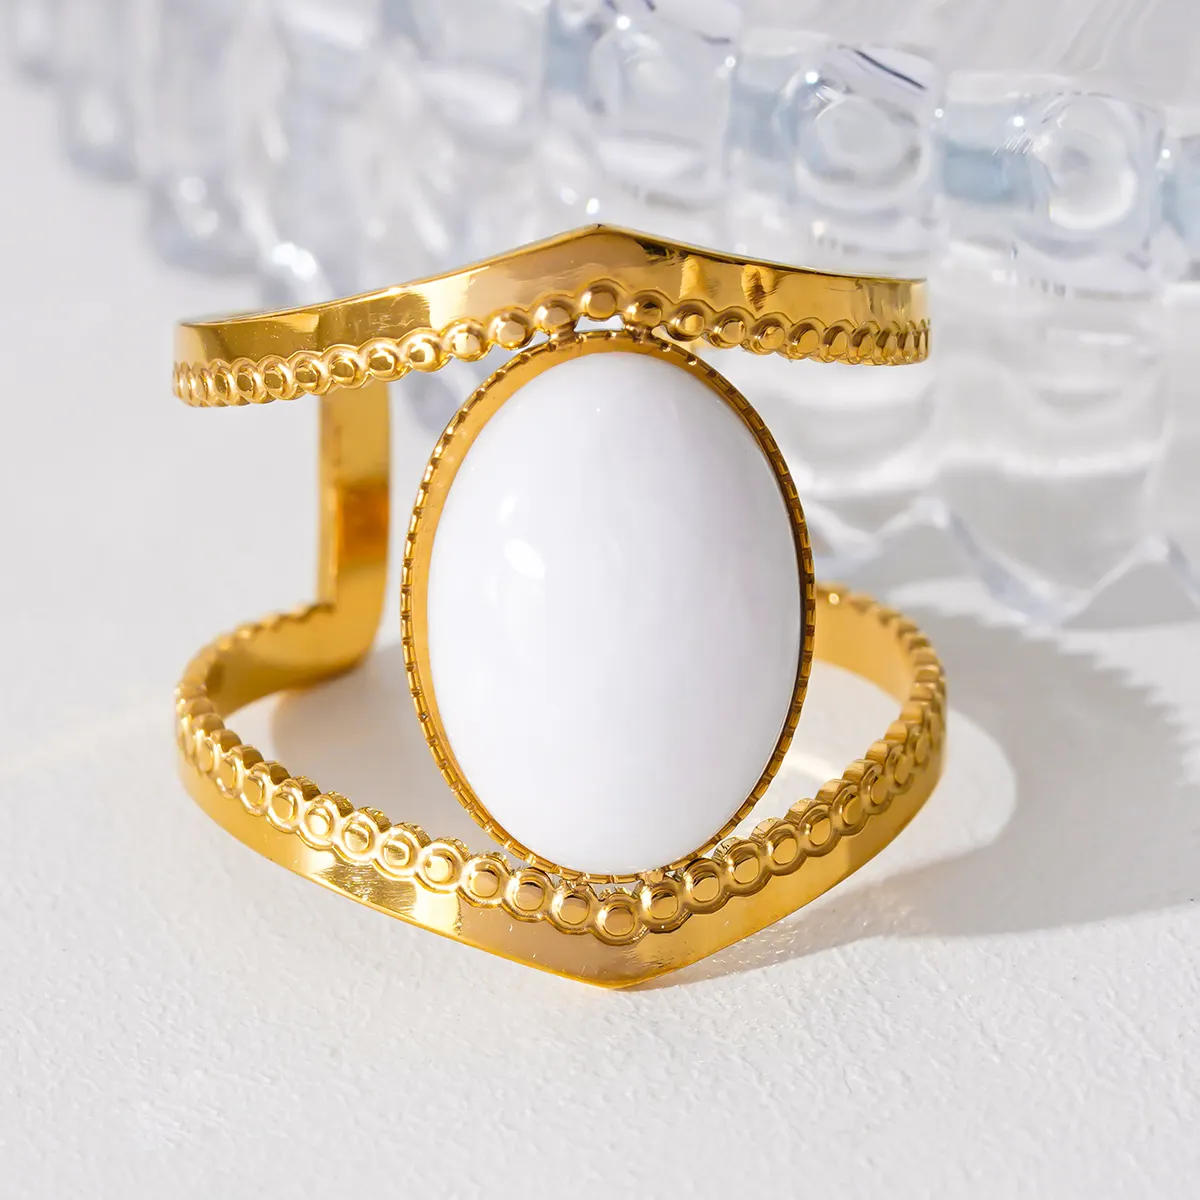 אופנה חוצה גבולות אישיות אופנתית פשוטה גיאומטרית חלולה אבן טבעית אבן טבעית מתכווננת טבעת פתיחה מתאימה לנשים